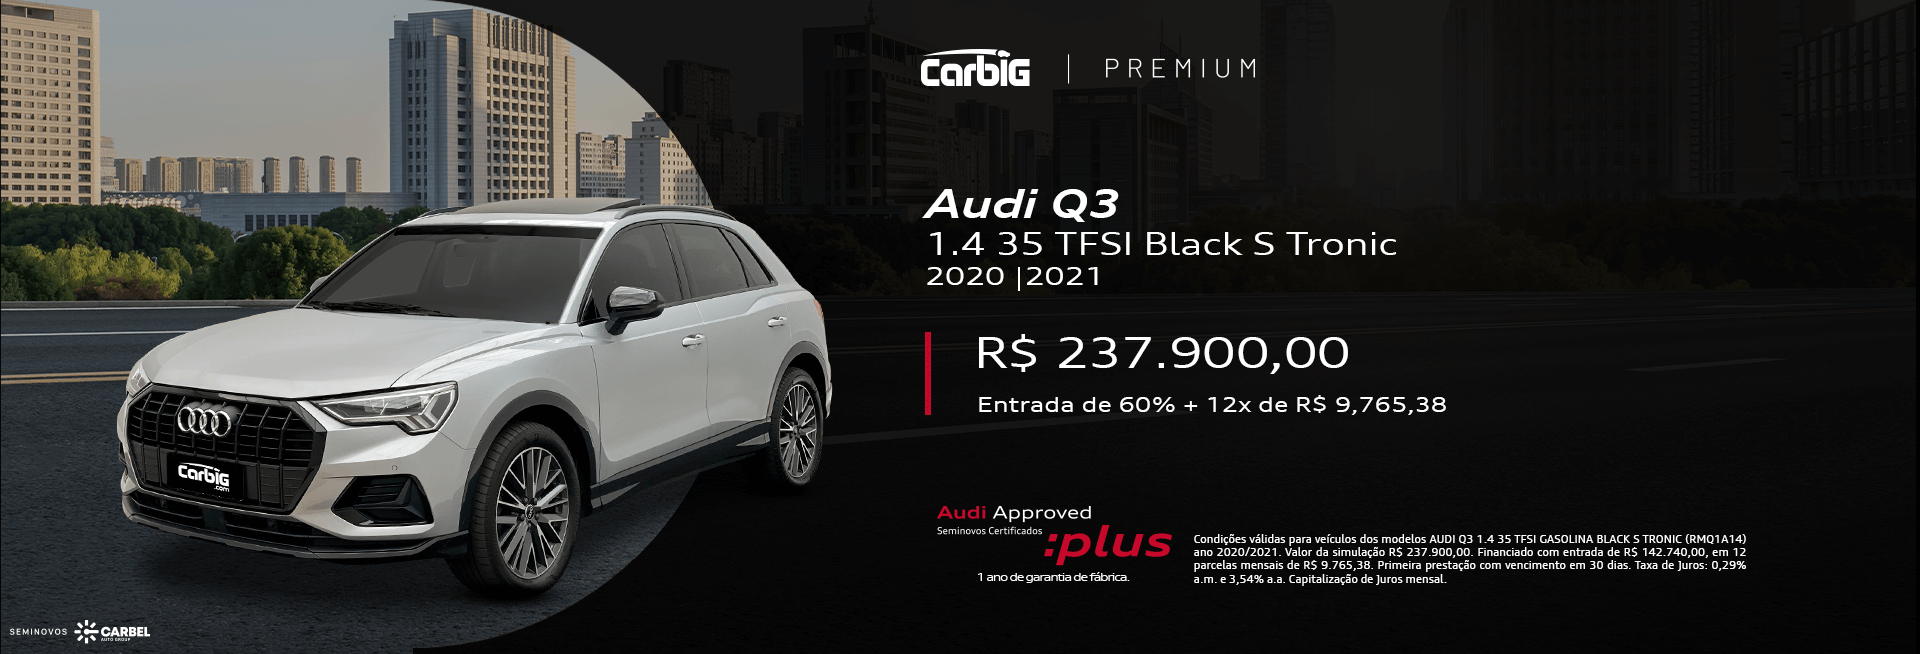 Audi Q3 01/24